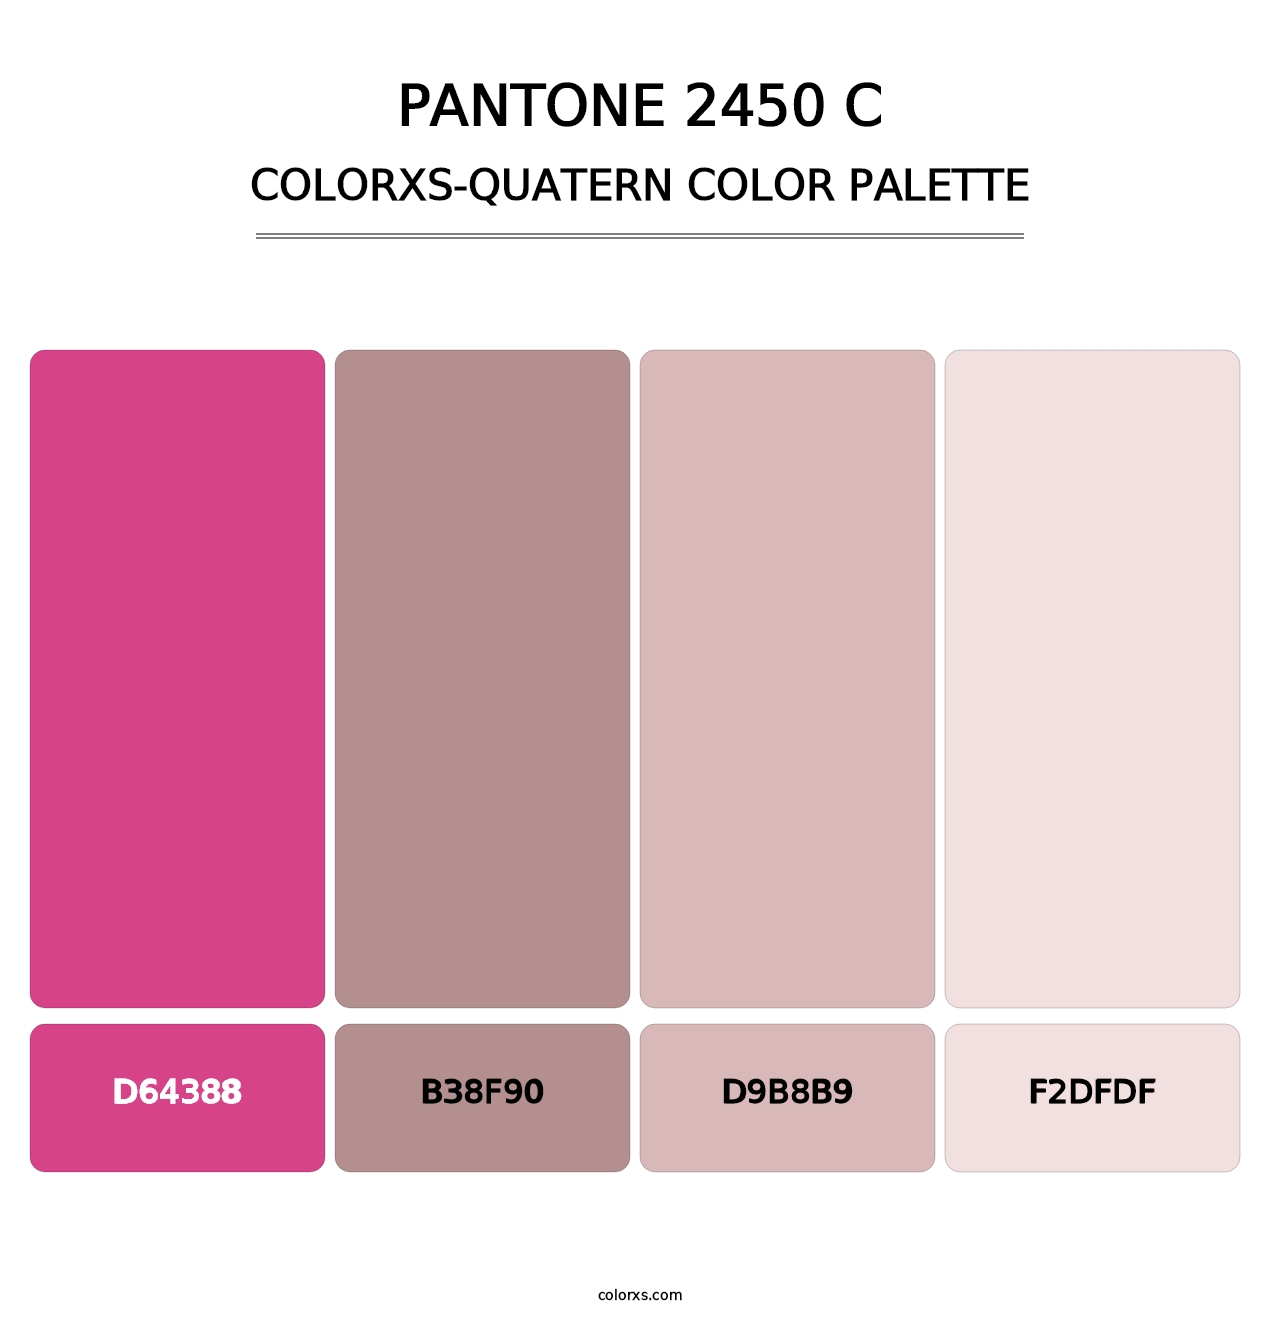 PANTONE 2450 C - Colorxs Quatern Palette